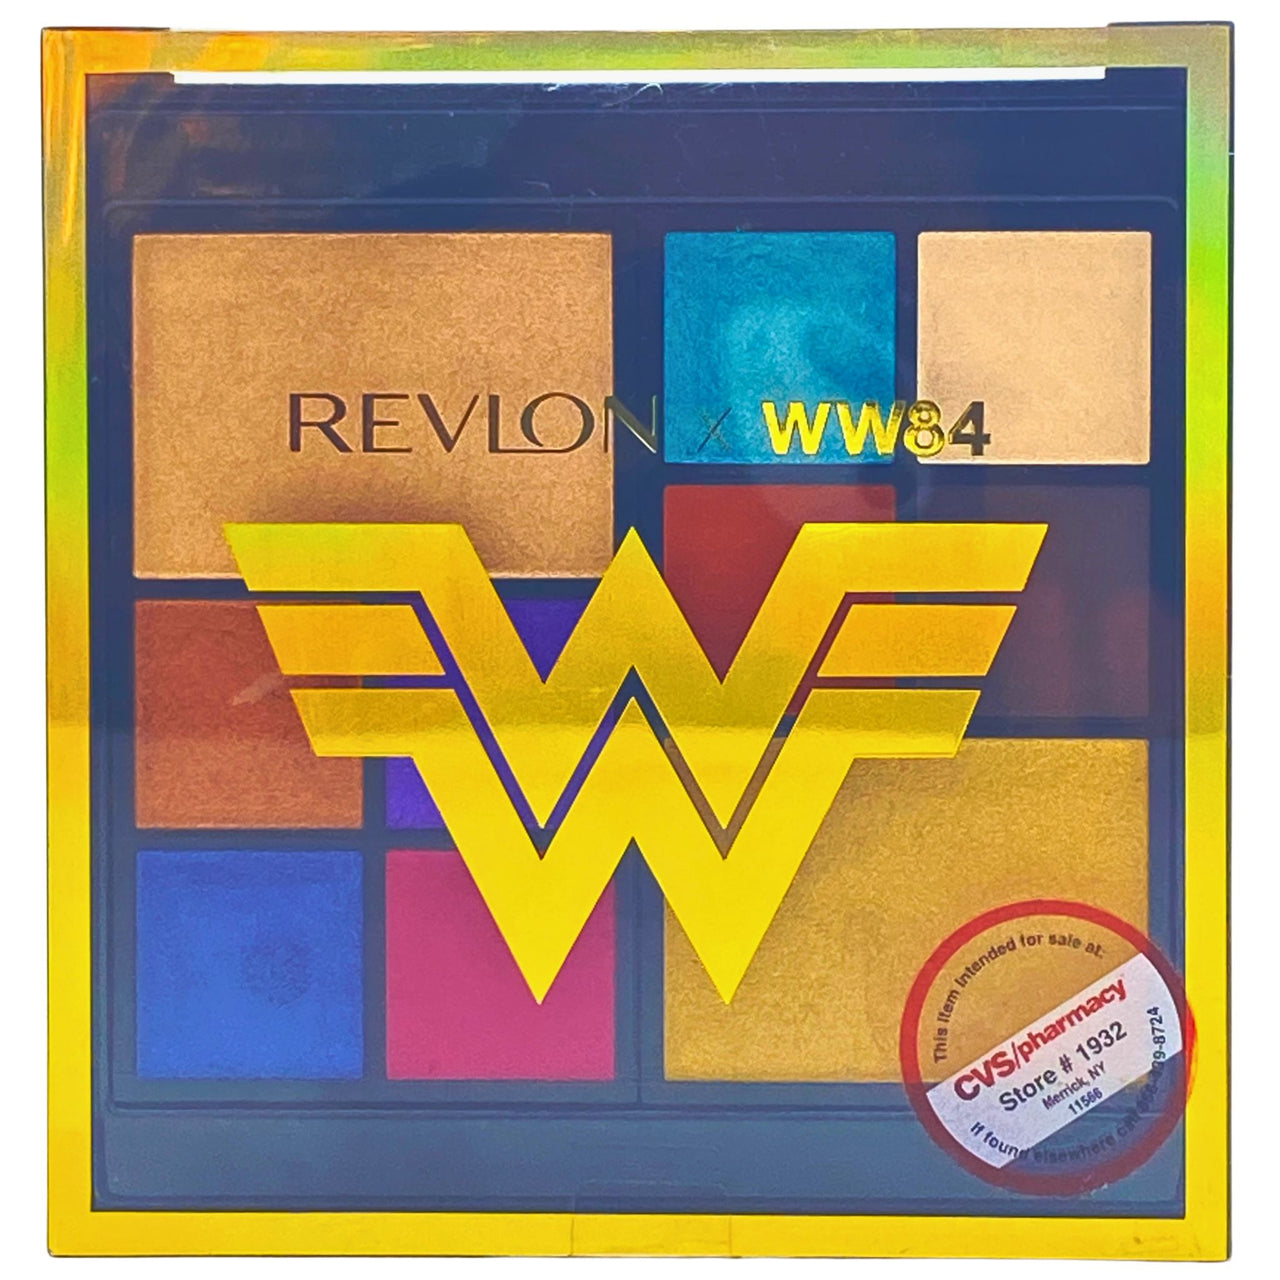 Revlon X WW84 The Wonder Woman Face & Eye Palette